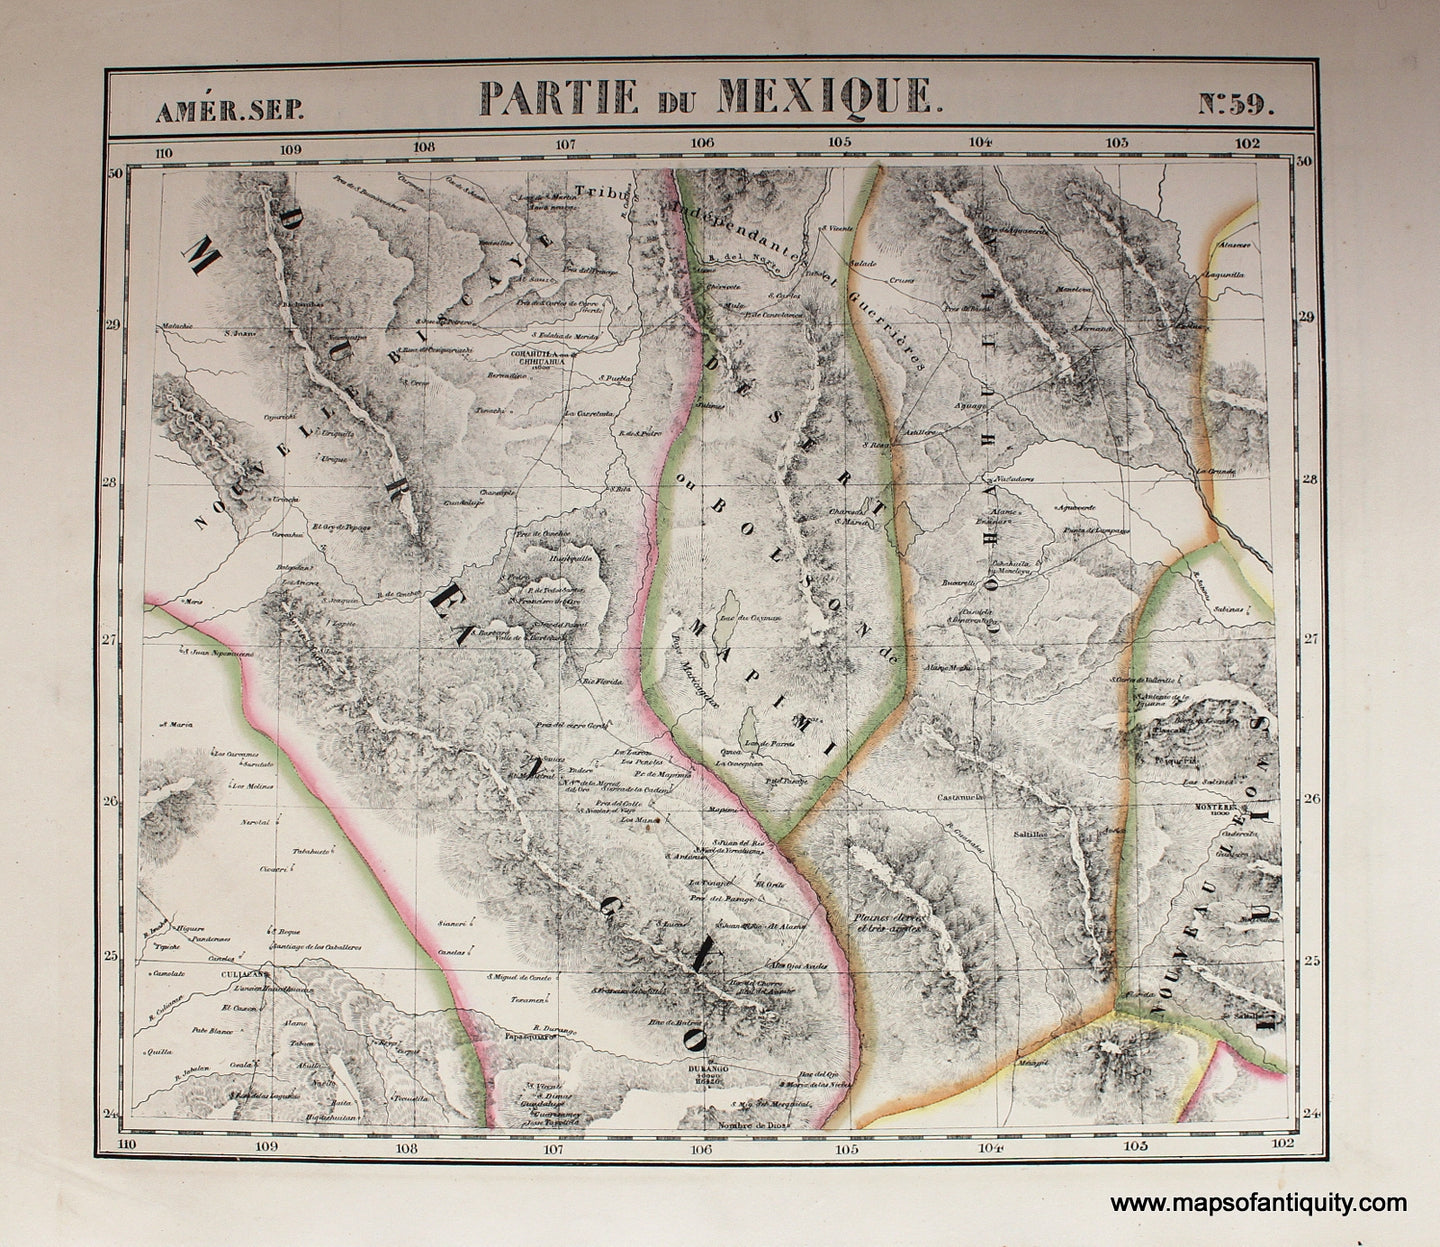 Antique-Hand-Colored-Map-Amerique-Septentrionale-No.-59-Partie-du-Mexique-North-America-Mexico-1827-Vandermaelen-Maps-Of-Antiquity